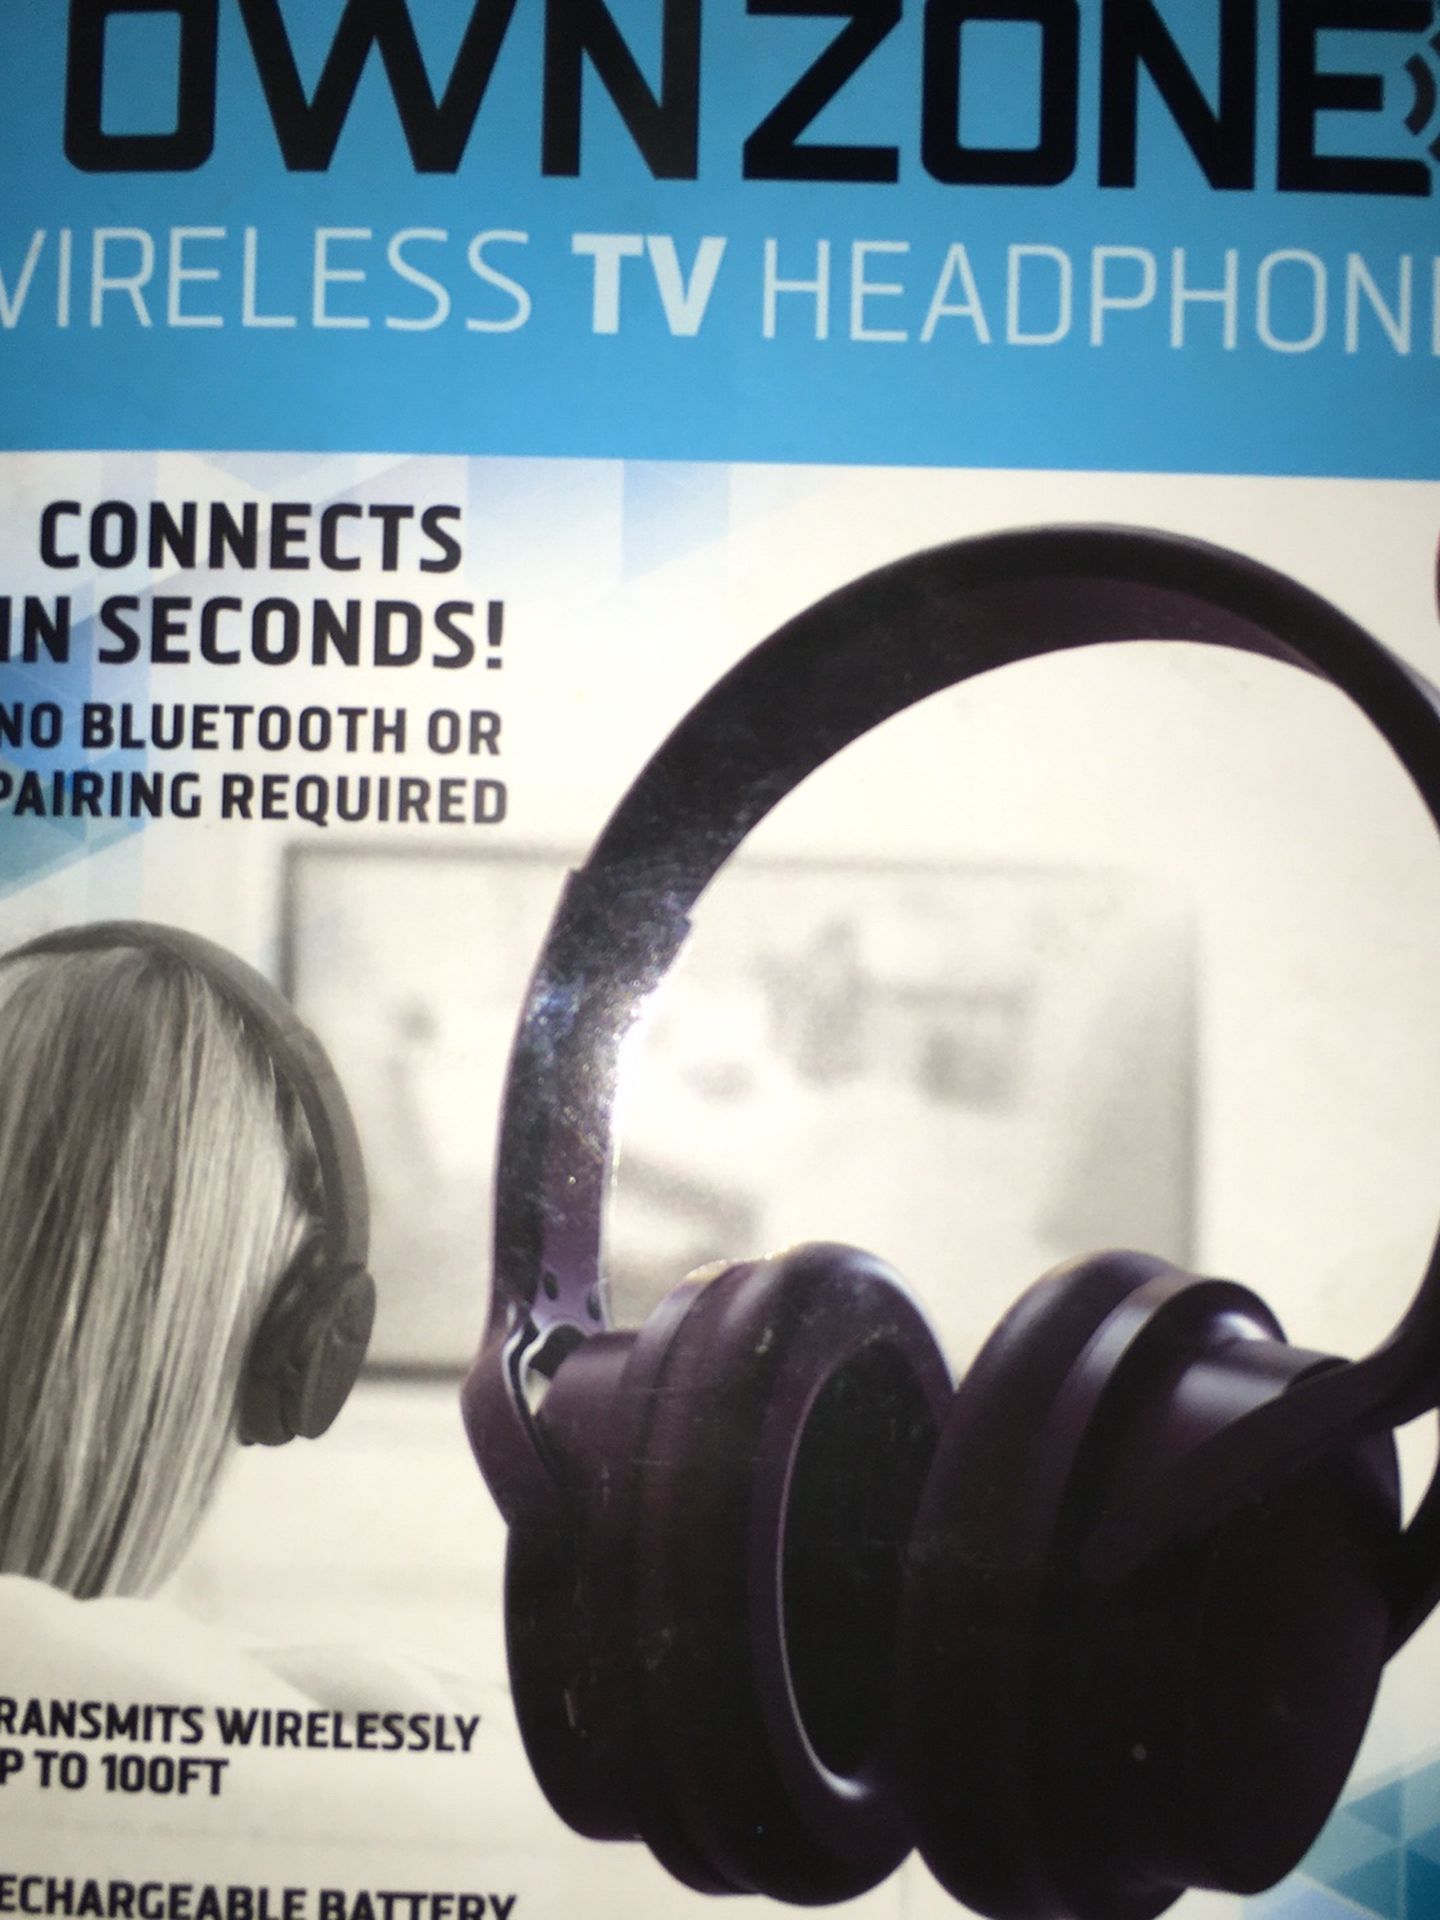 New Own Zone Wireless headphones